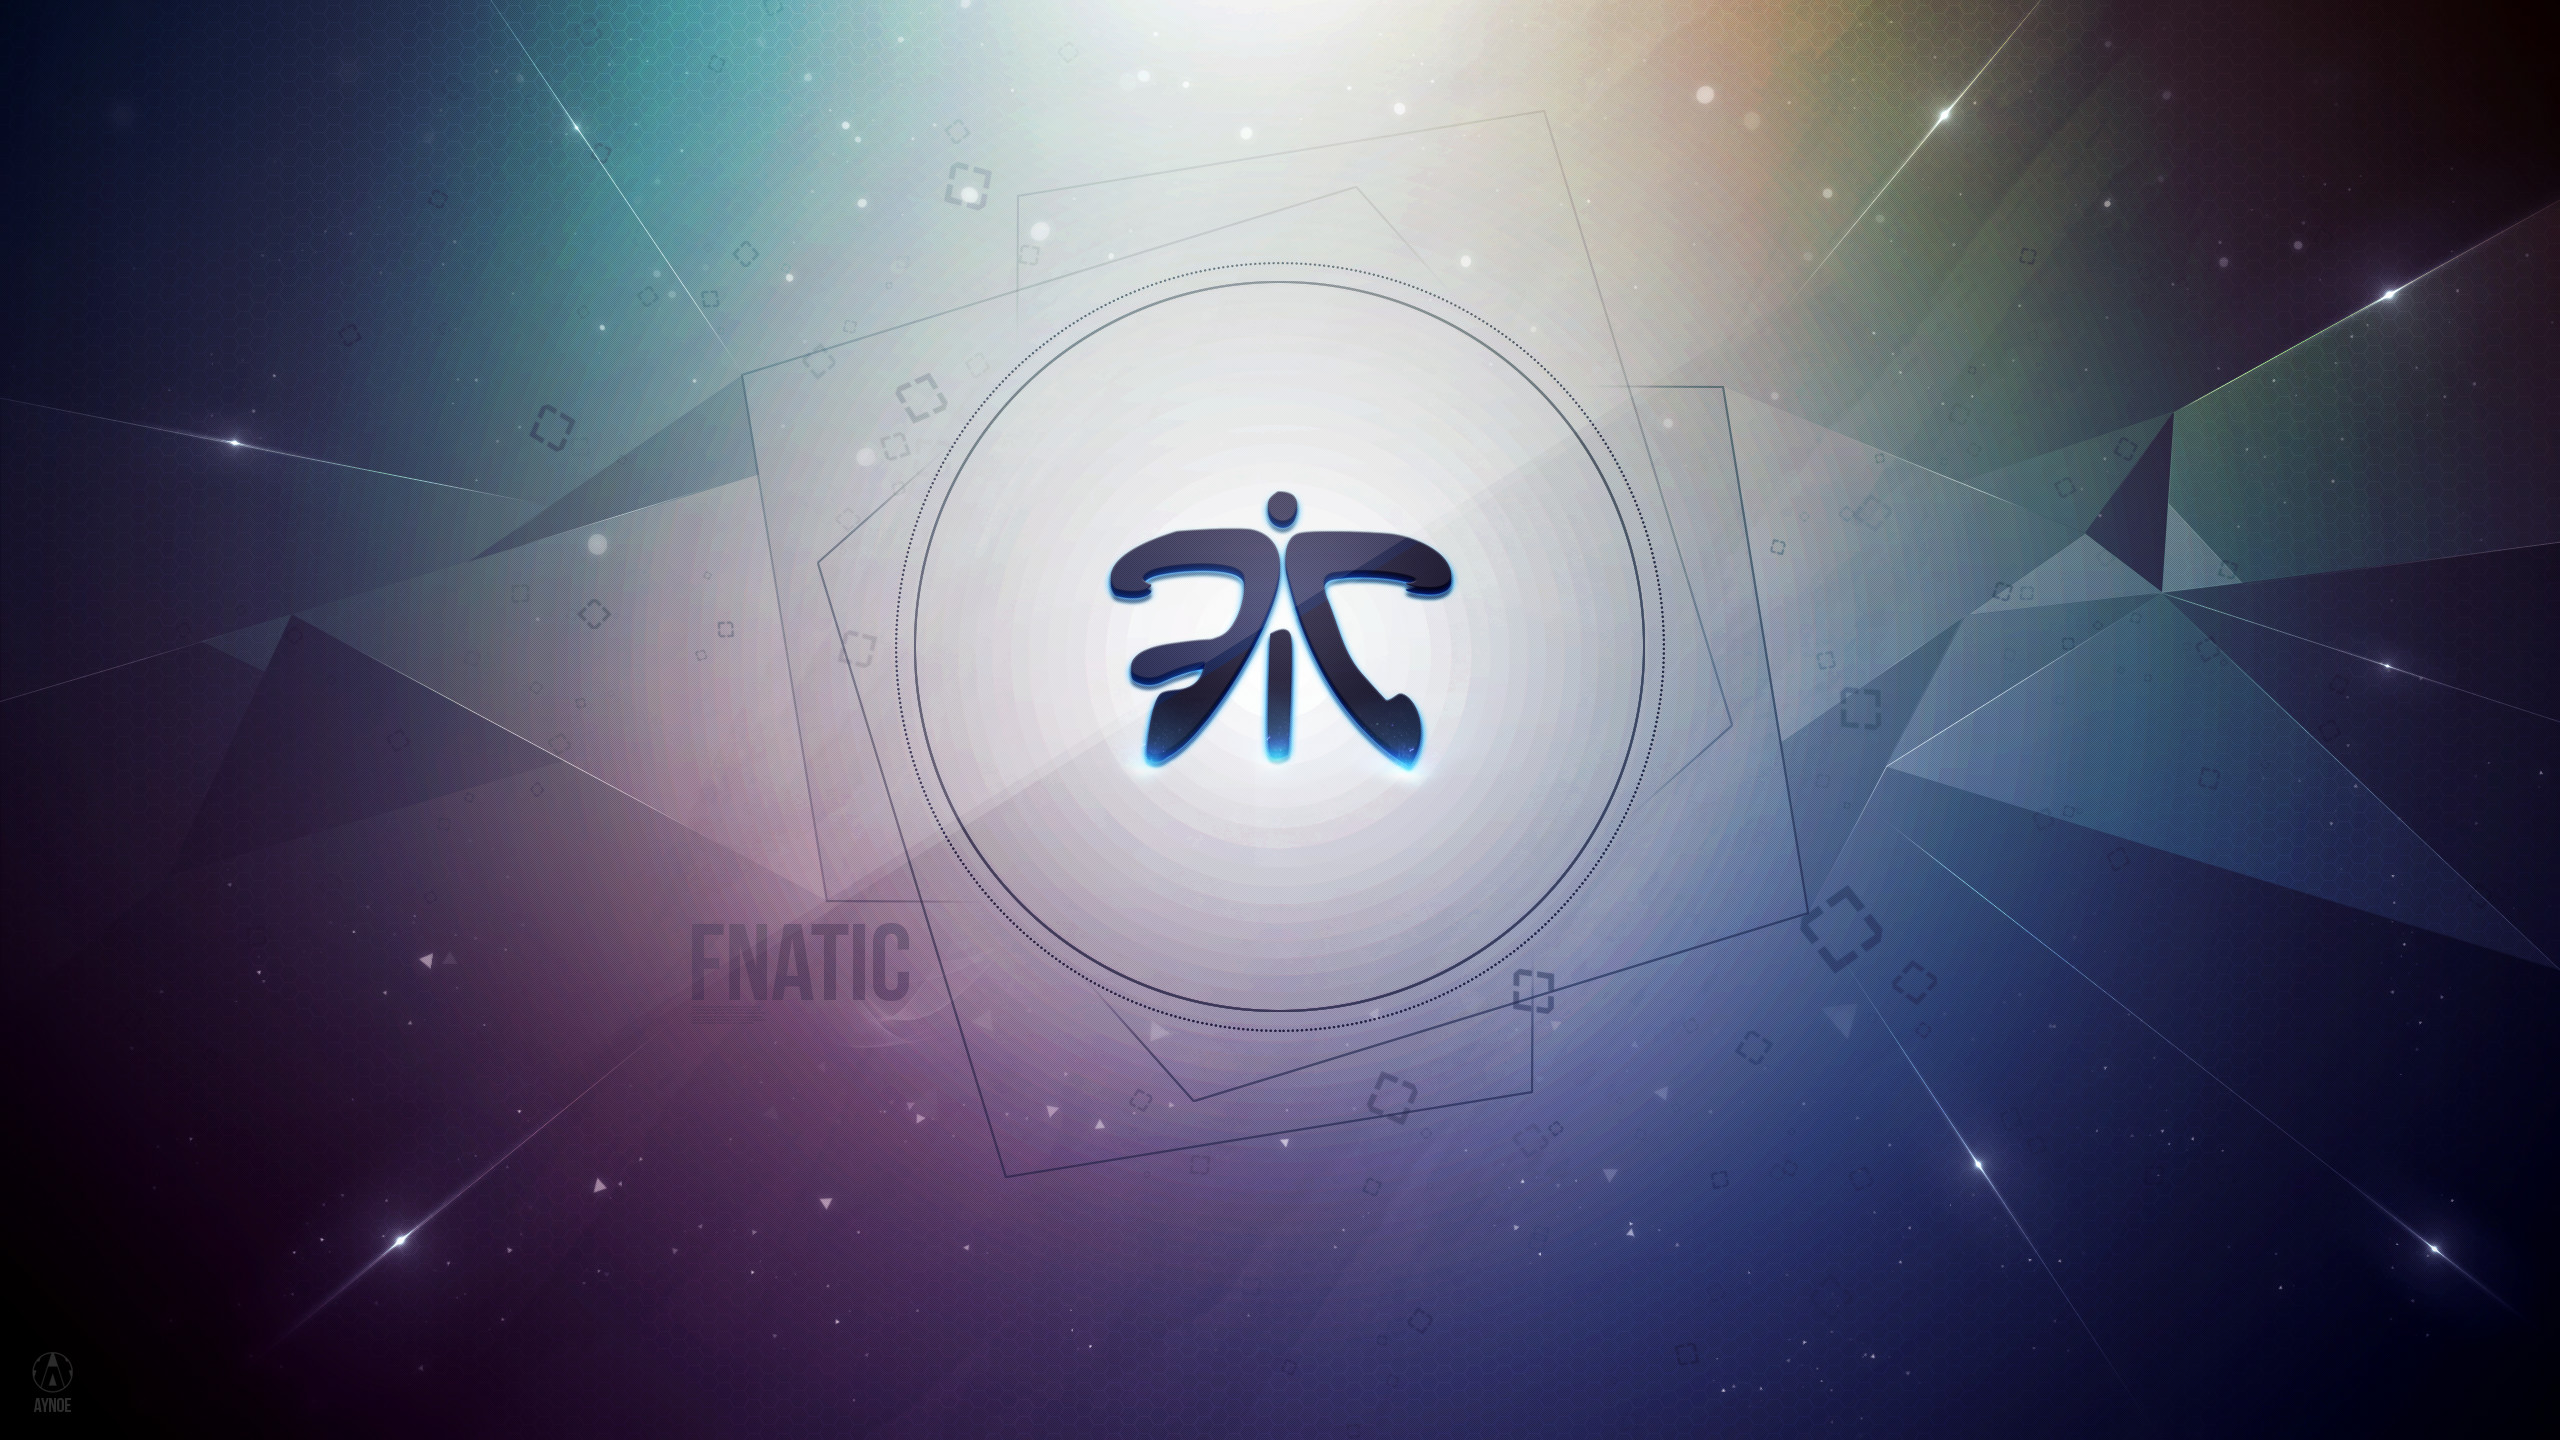 2560x1440 ... Fnatic 3.0 Wallpaper Logo - League of Legends by Aynoe